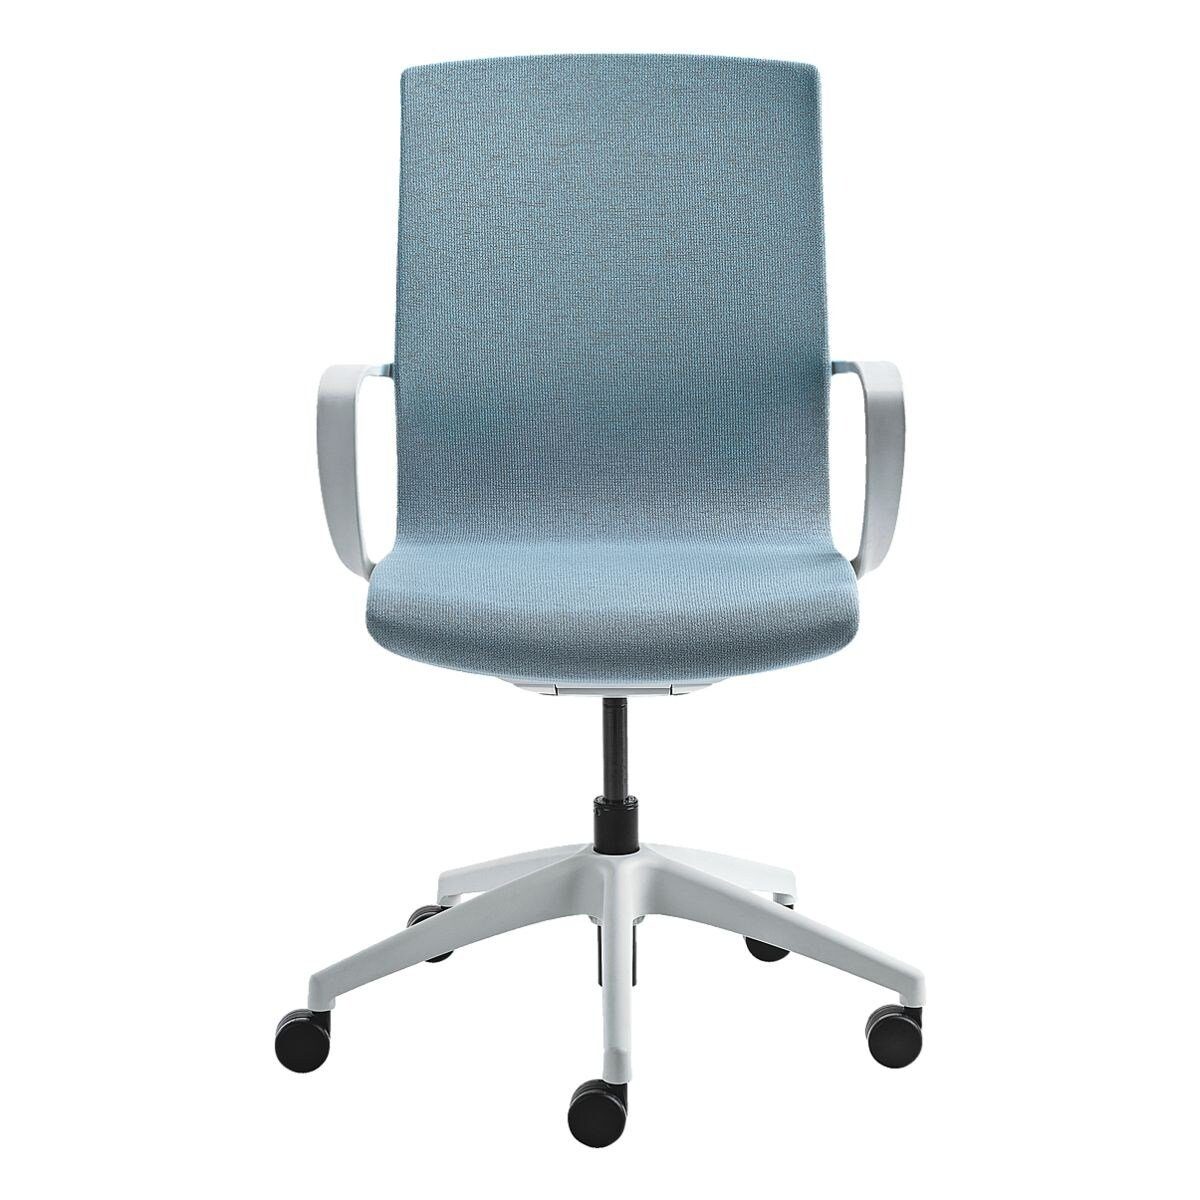 Flachsitz Schreibtischstuhl Mayer Wippmechanik blau Armlehnen, mit und myMORRIS, Sitzmöbel